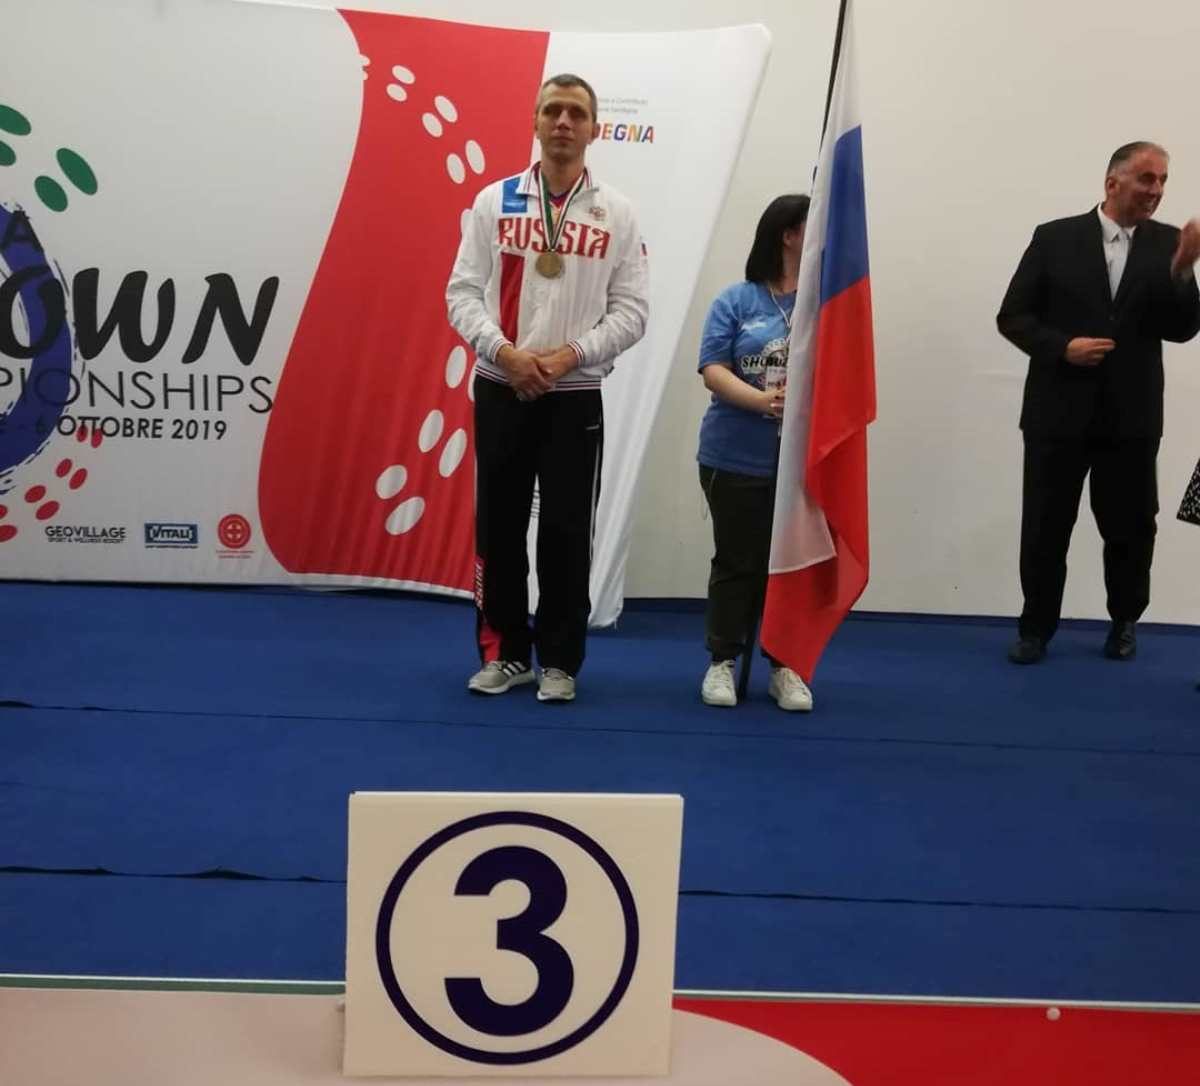 С широко закрытыми глазами: учитель из Твери стал первым российским призером чемпионата мира по шоудану